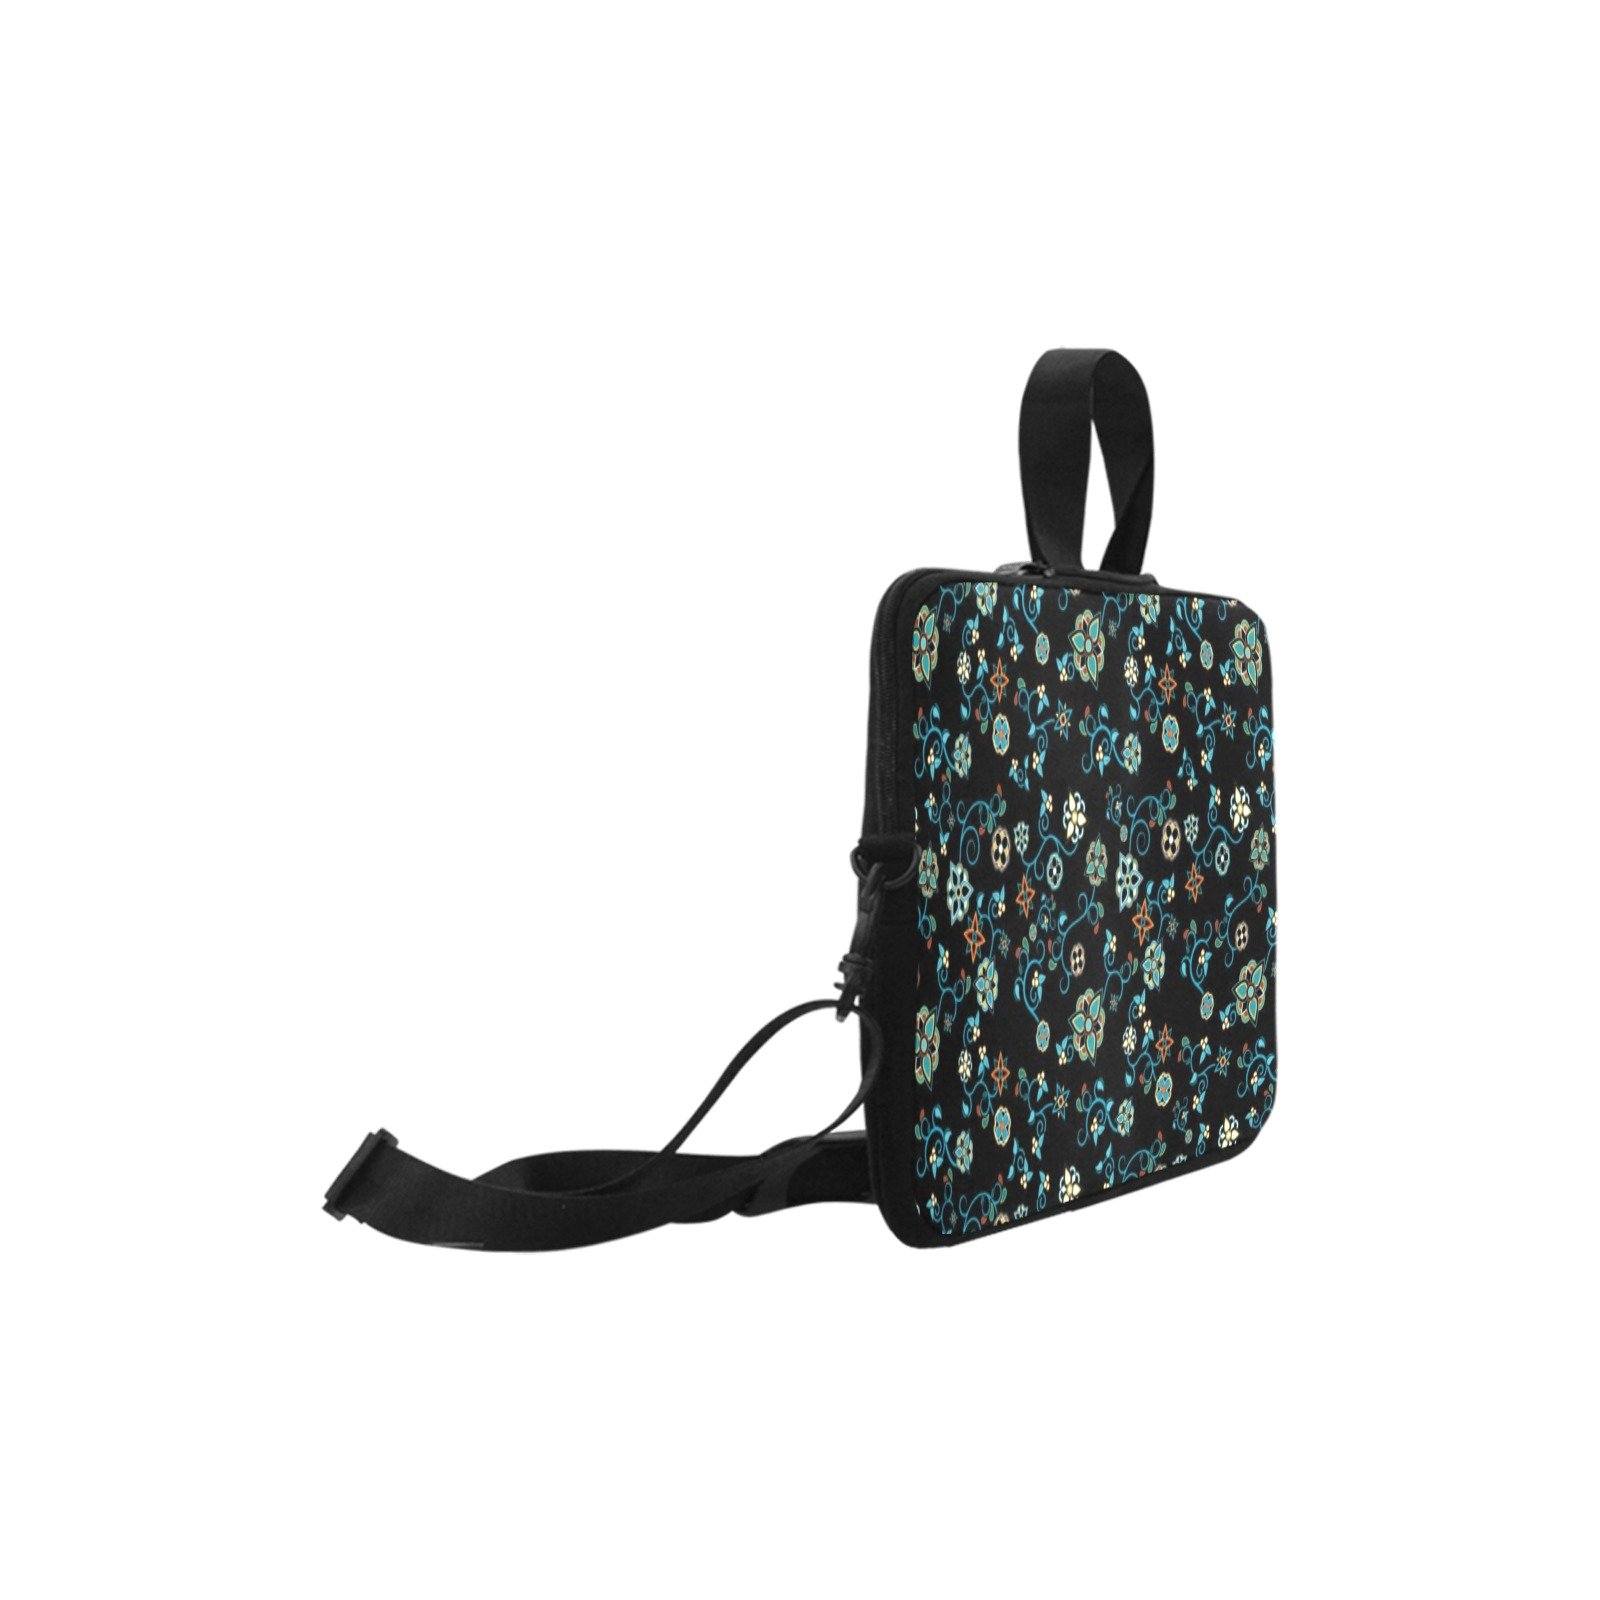 Ocean Bloom Laptop Handbags 10" bag e-joyer 